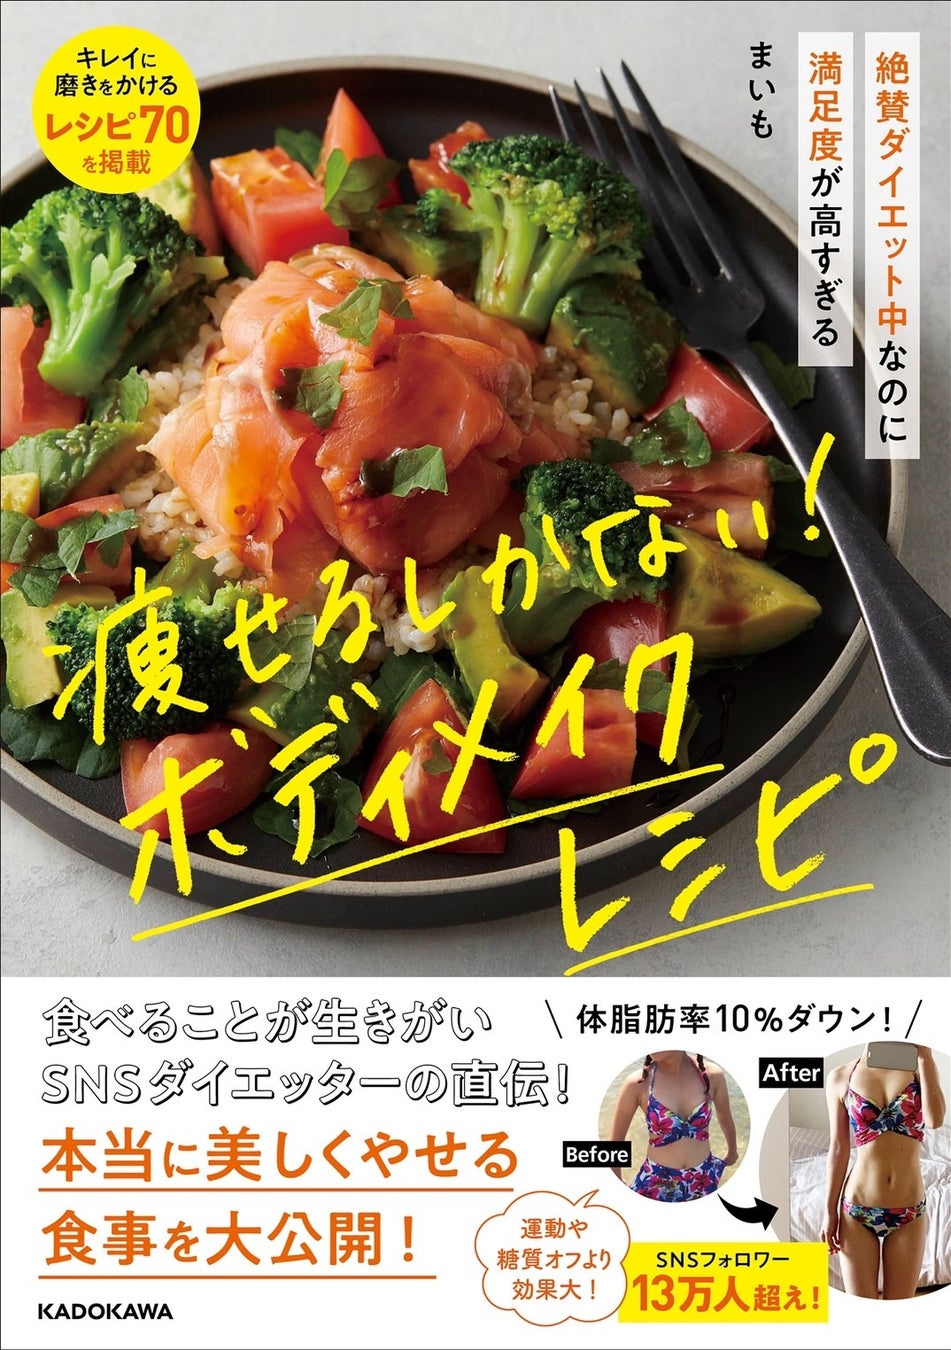 福岡の女性パーソナルトレーナーみなみ（まいも）のダイエットレシピ本「絶賛ダイエット中なのに満足度が高すぎる 痩せるしかない! ボディメイクレシピ」が好評につき、パーソナルジムでも購入可能に